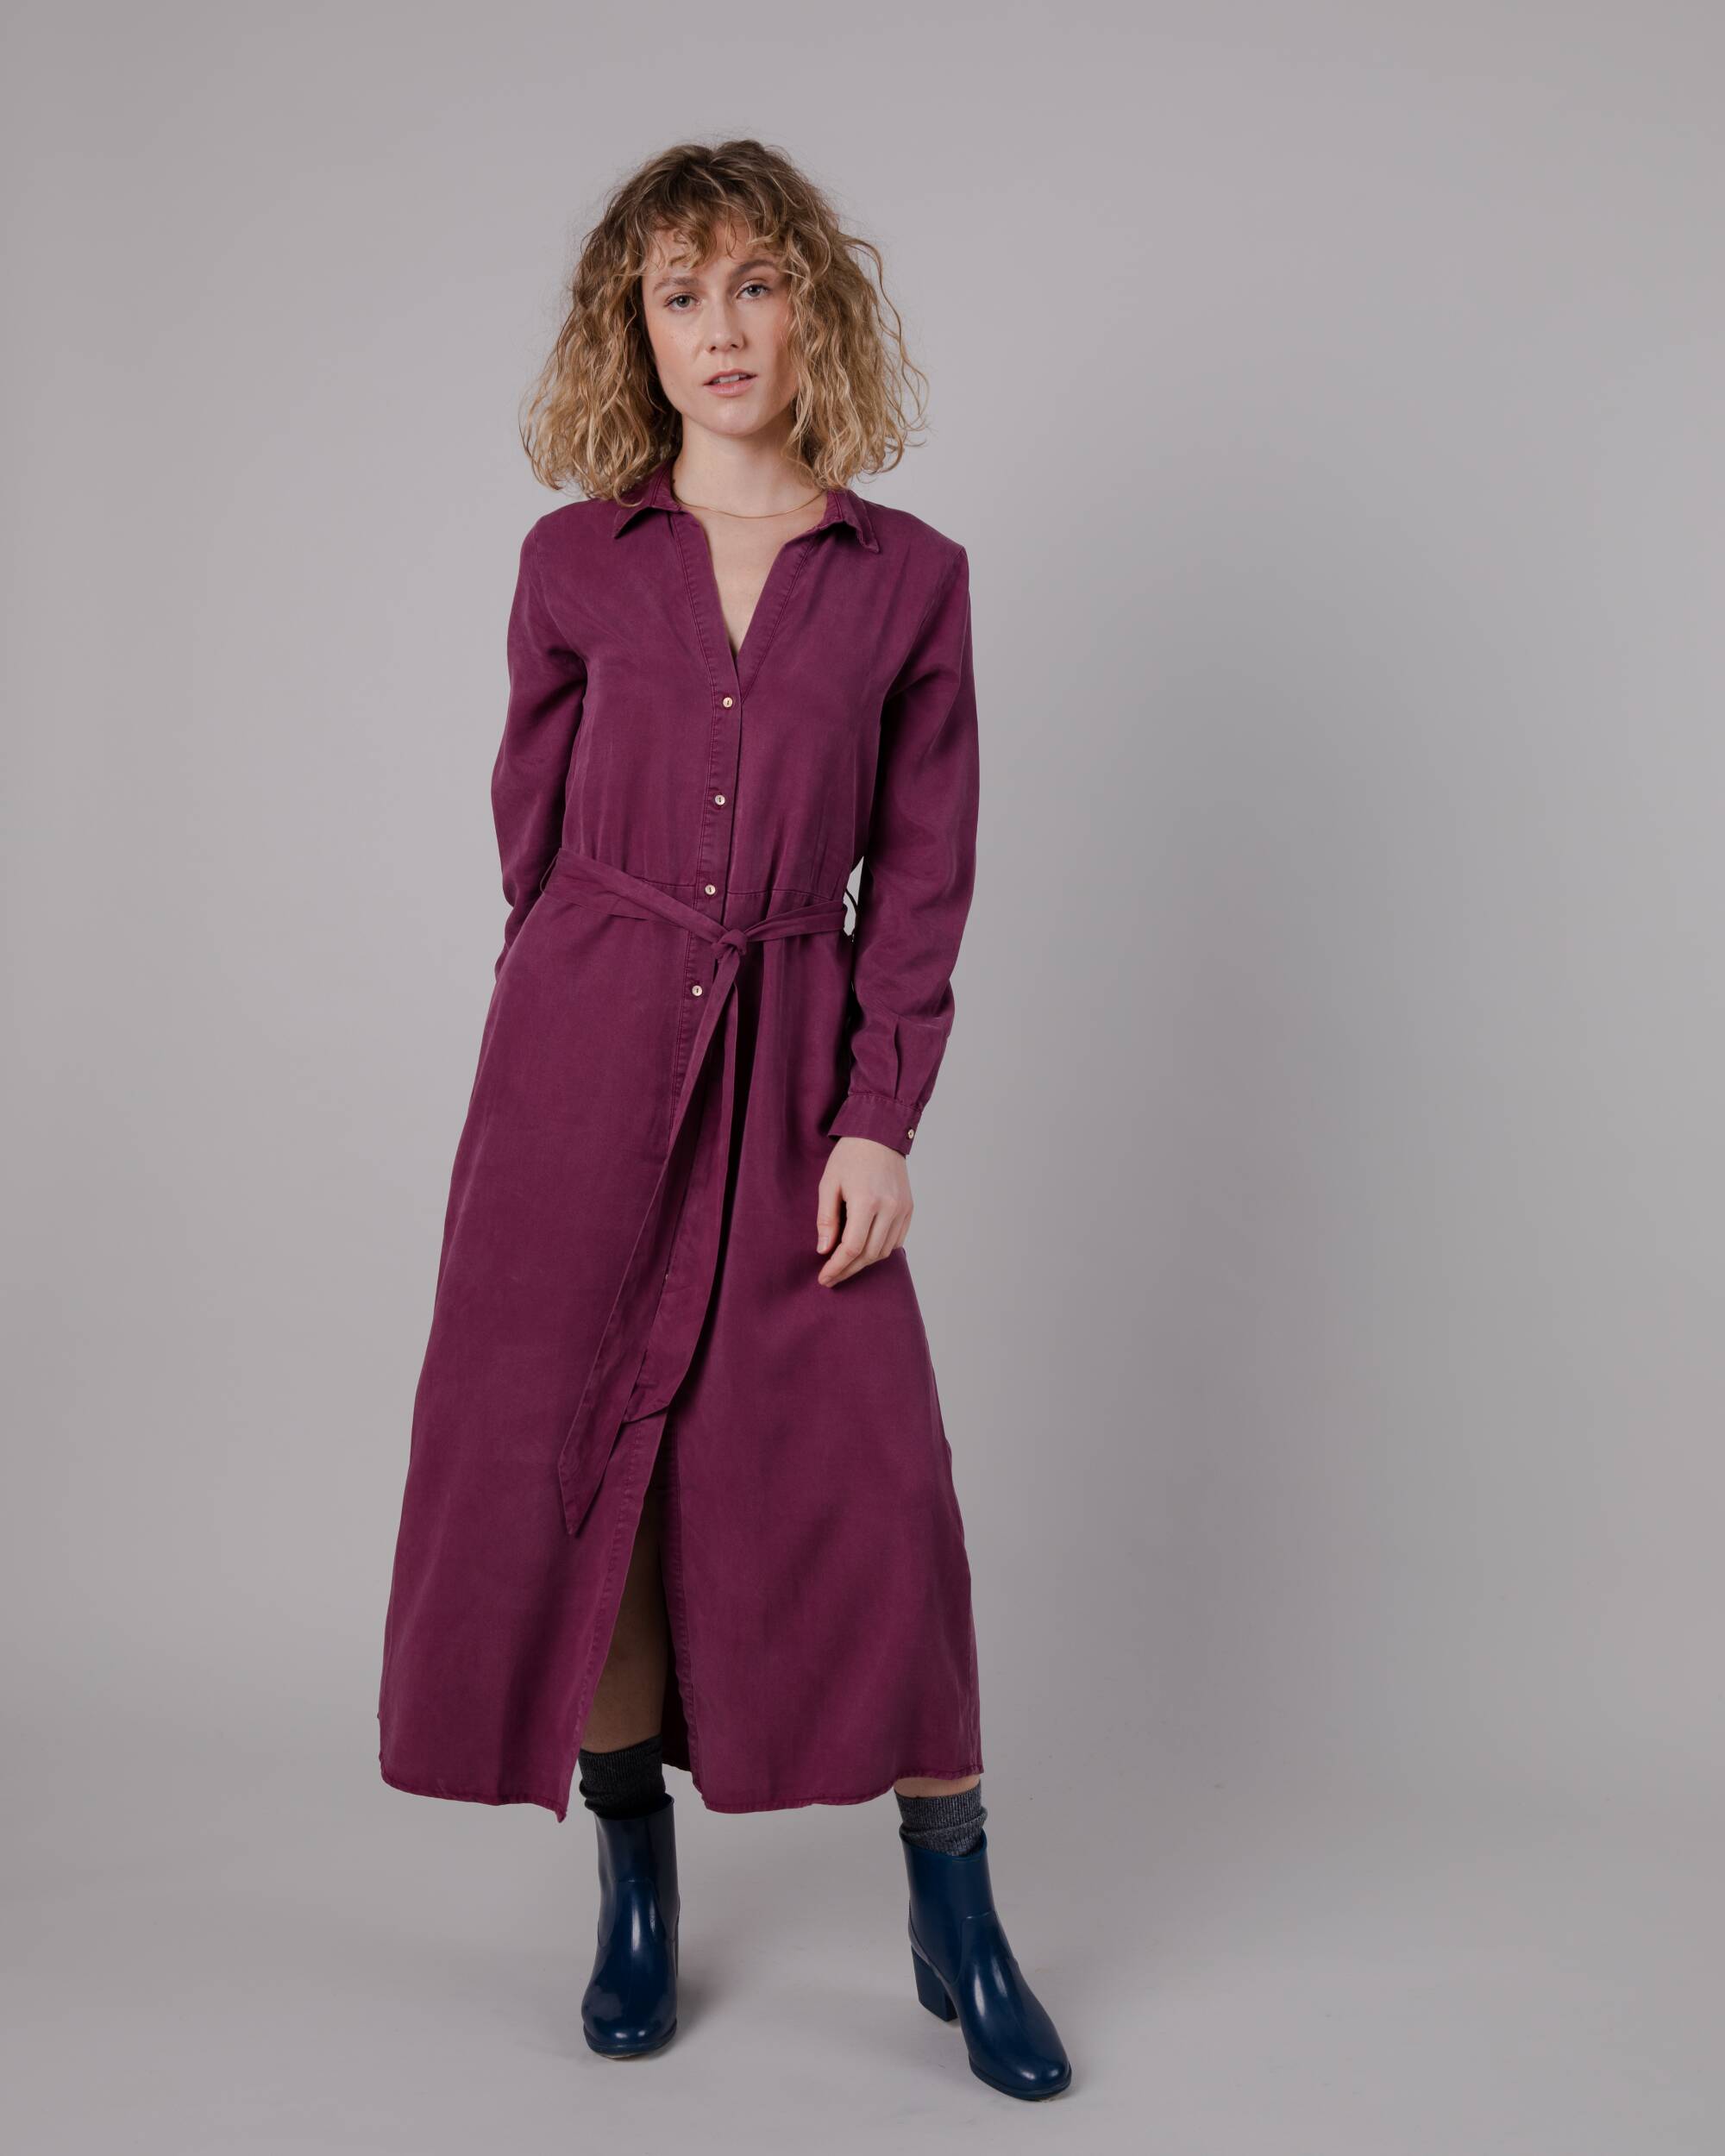 Robe en Tencel violet de Brava Fabrics